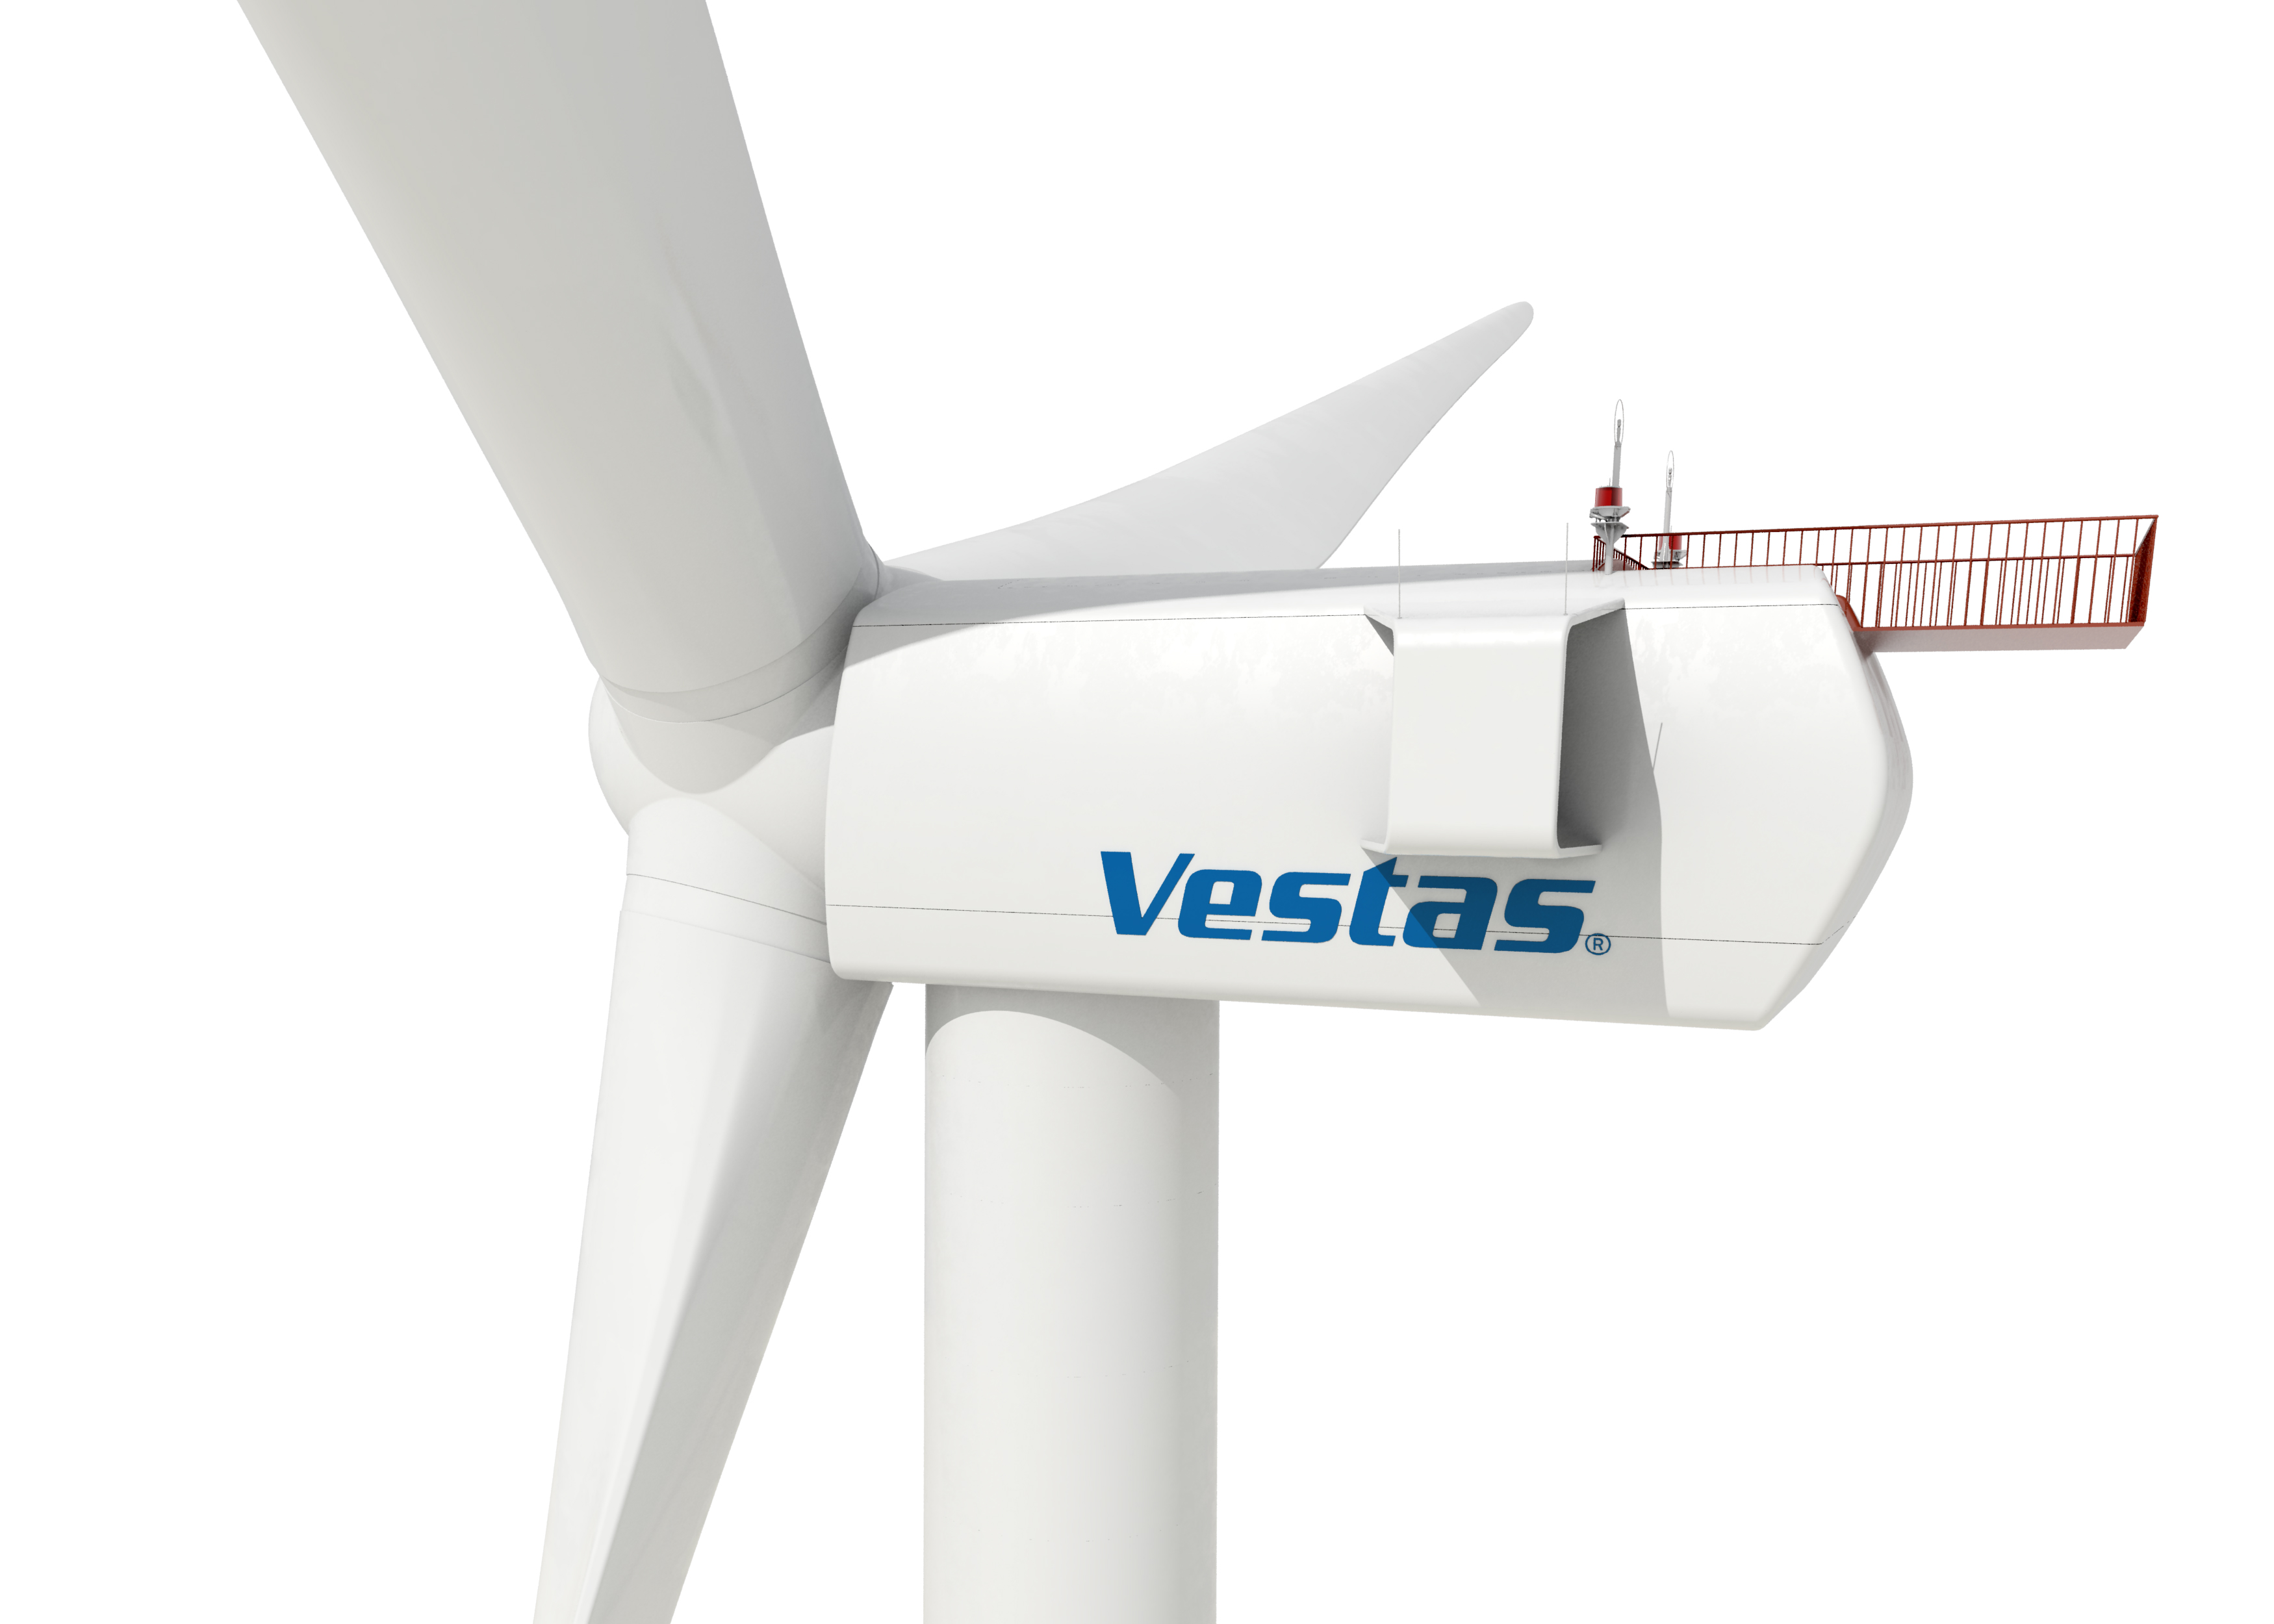 La eólica Vestas espera facturar 9.000 millones en 2016